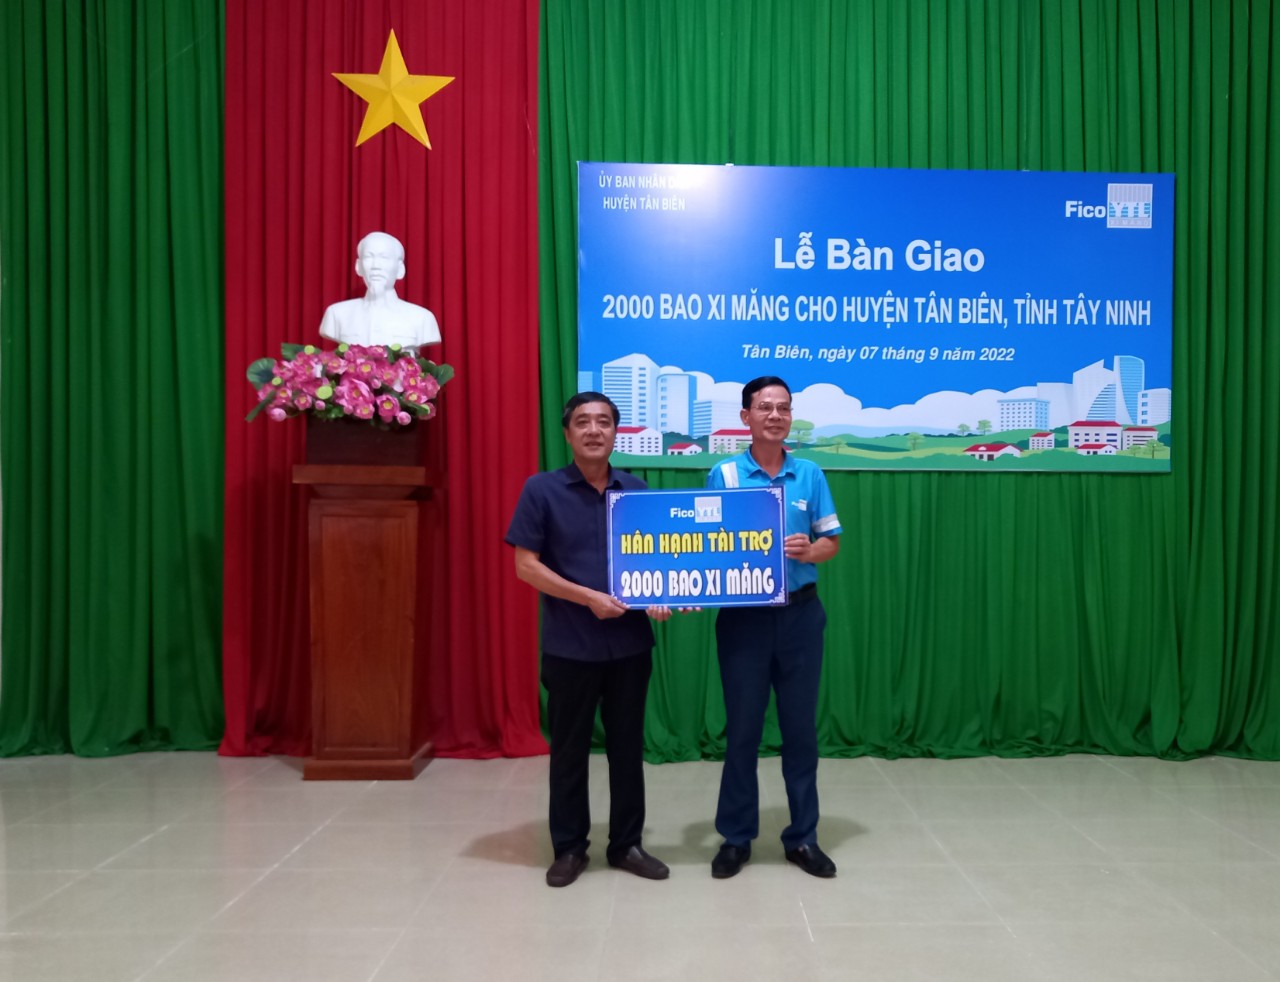 Công ty cổ phần Xi măng Fico Tây Ninh tài trợ 2000 bao xi măng cho huyện Tân Biễn